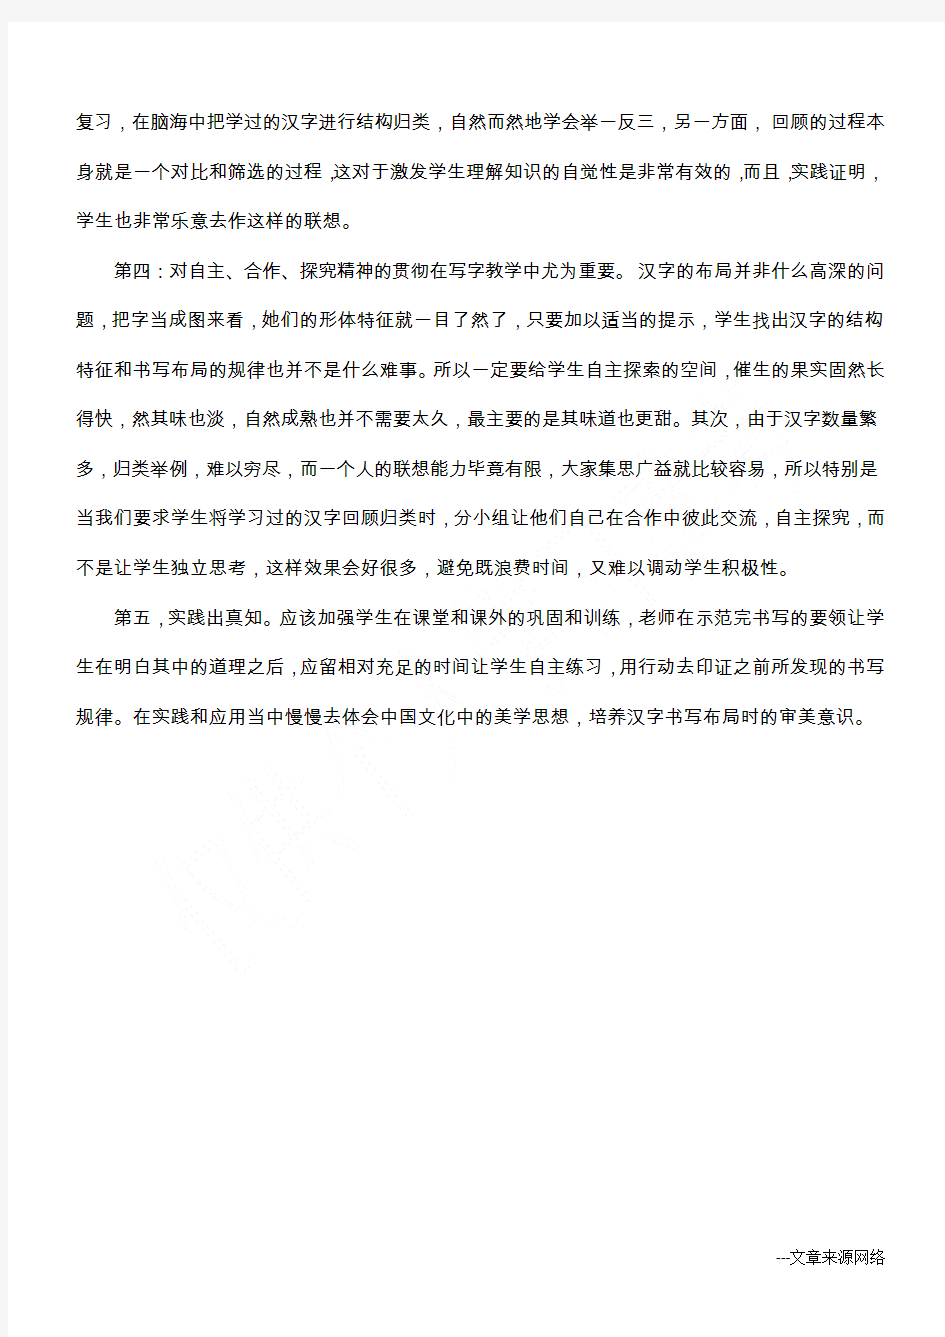 汉字书写布局技巧教学中必须把握的几个原则